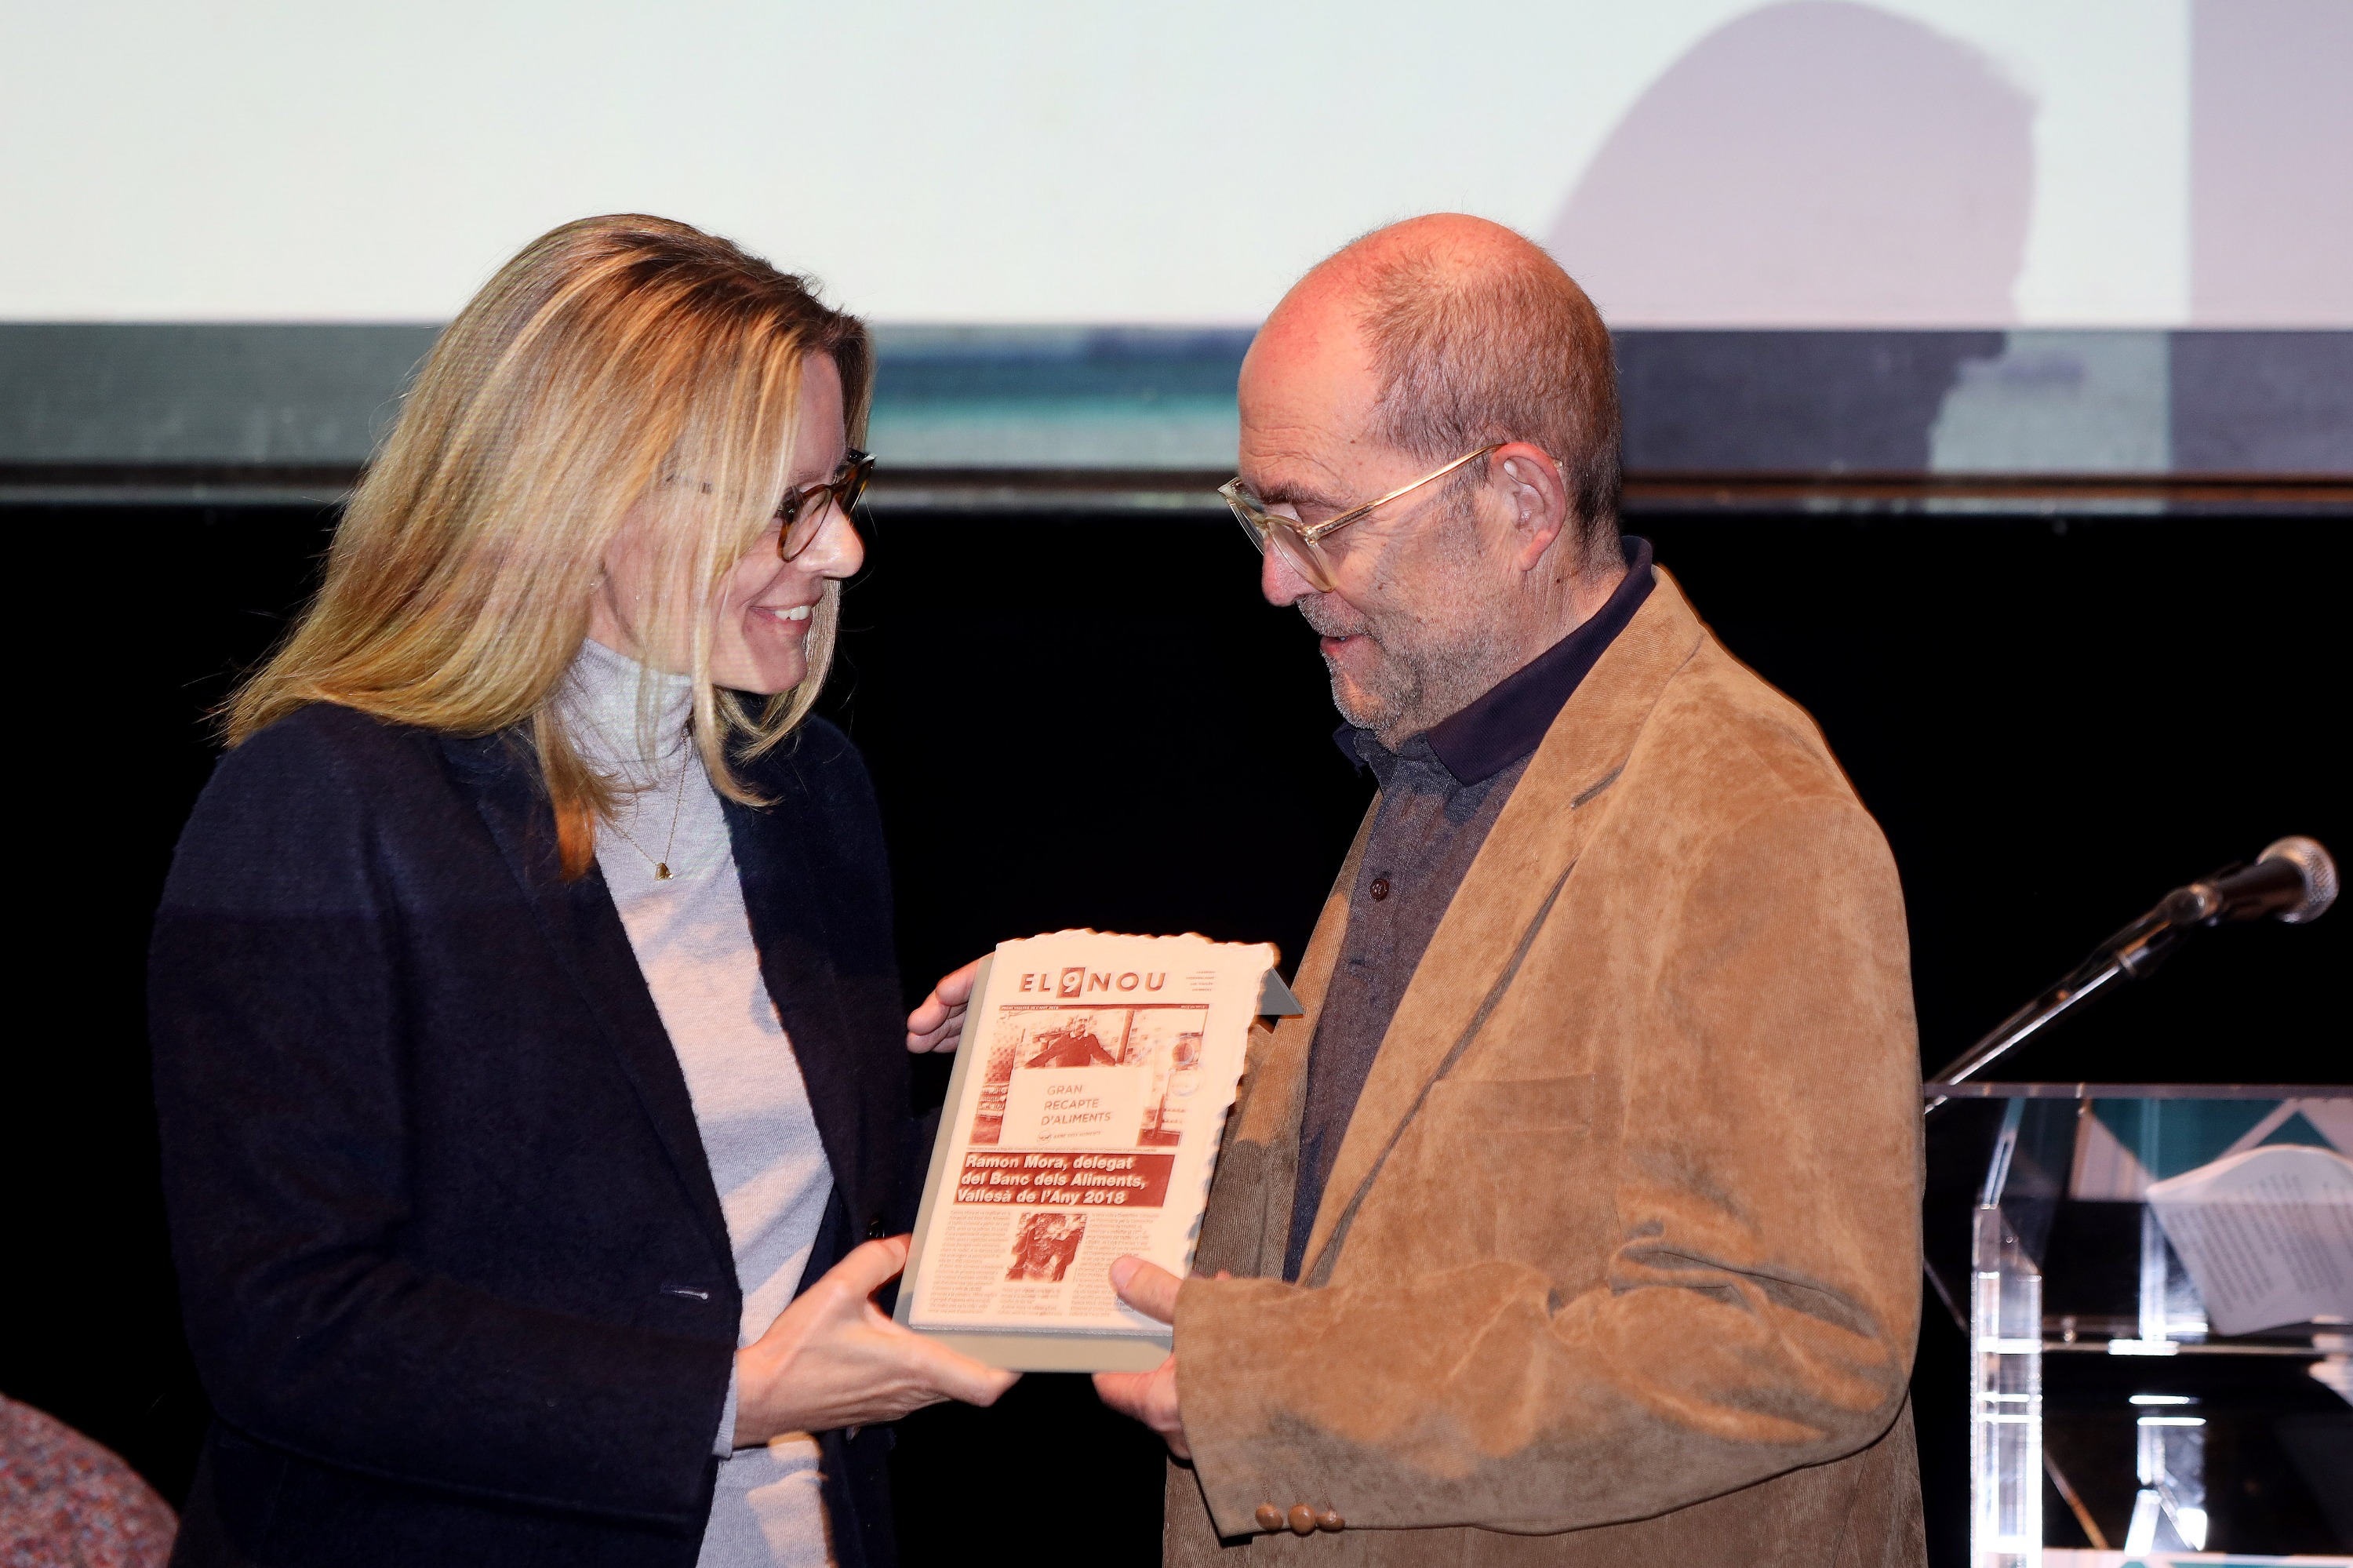 Ramon Mora rep el premi de mans de la presidenta de l'empresa editora d'EL 9 NOU, Beth Codina